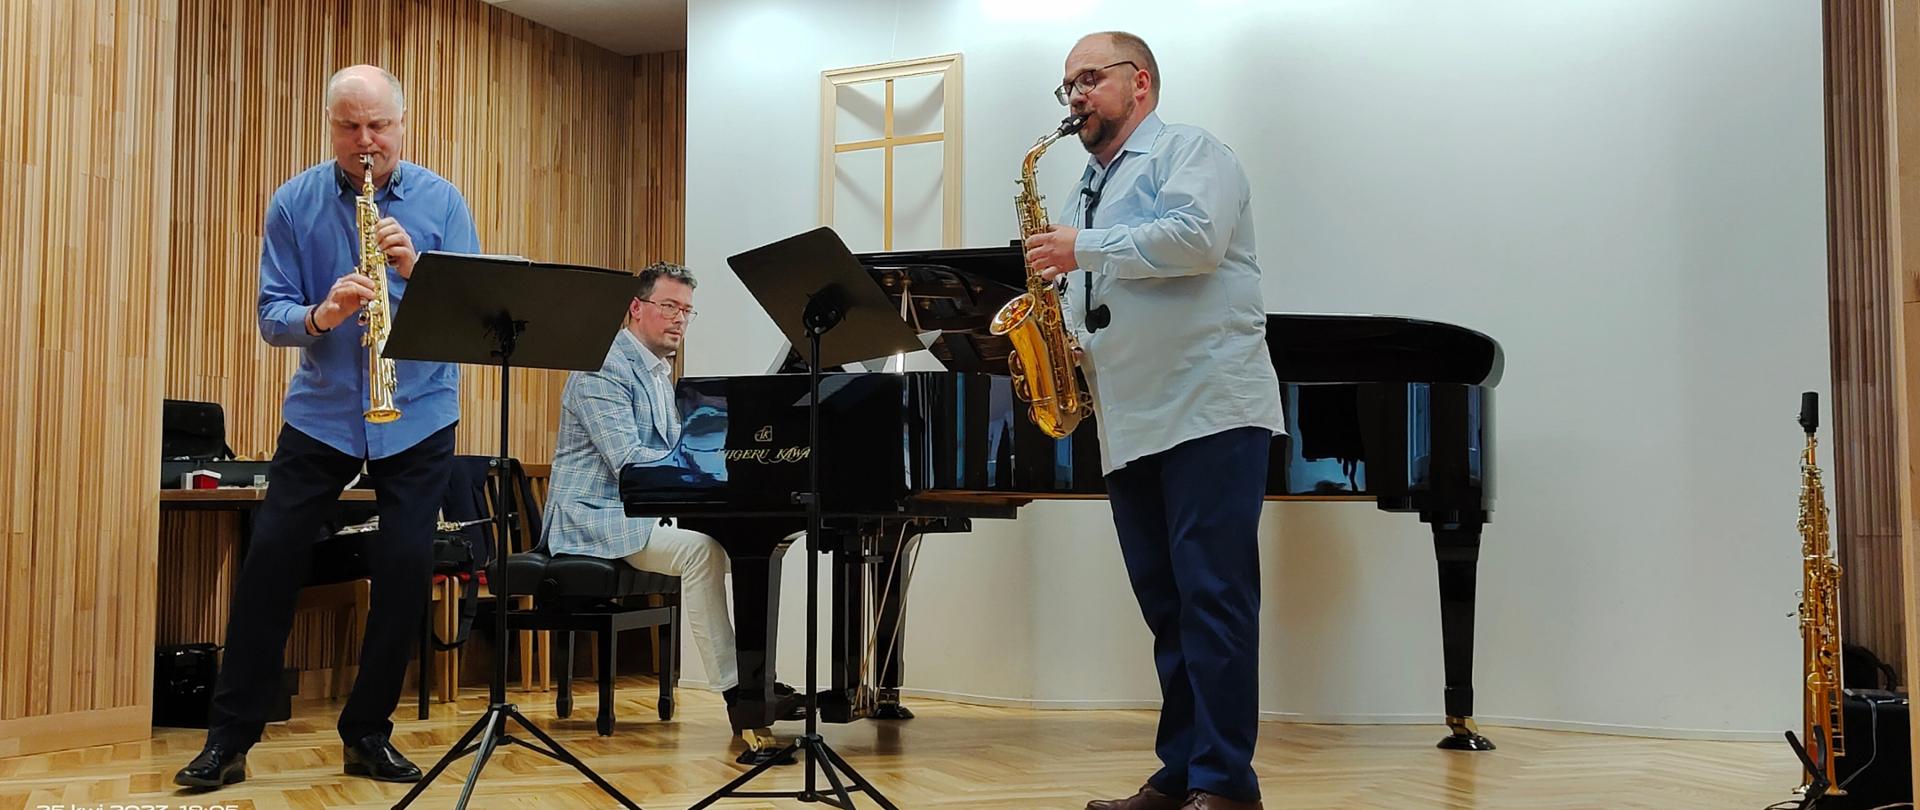 Zdjęcie podczas występu na sali koncertowej szkoły ,prof. Ryszard Żołędziewski.mgr Adrian Masseli,dr Daniel Rybak